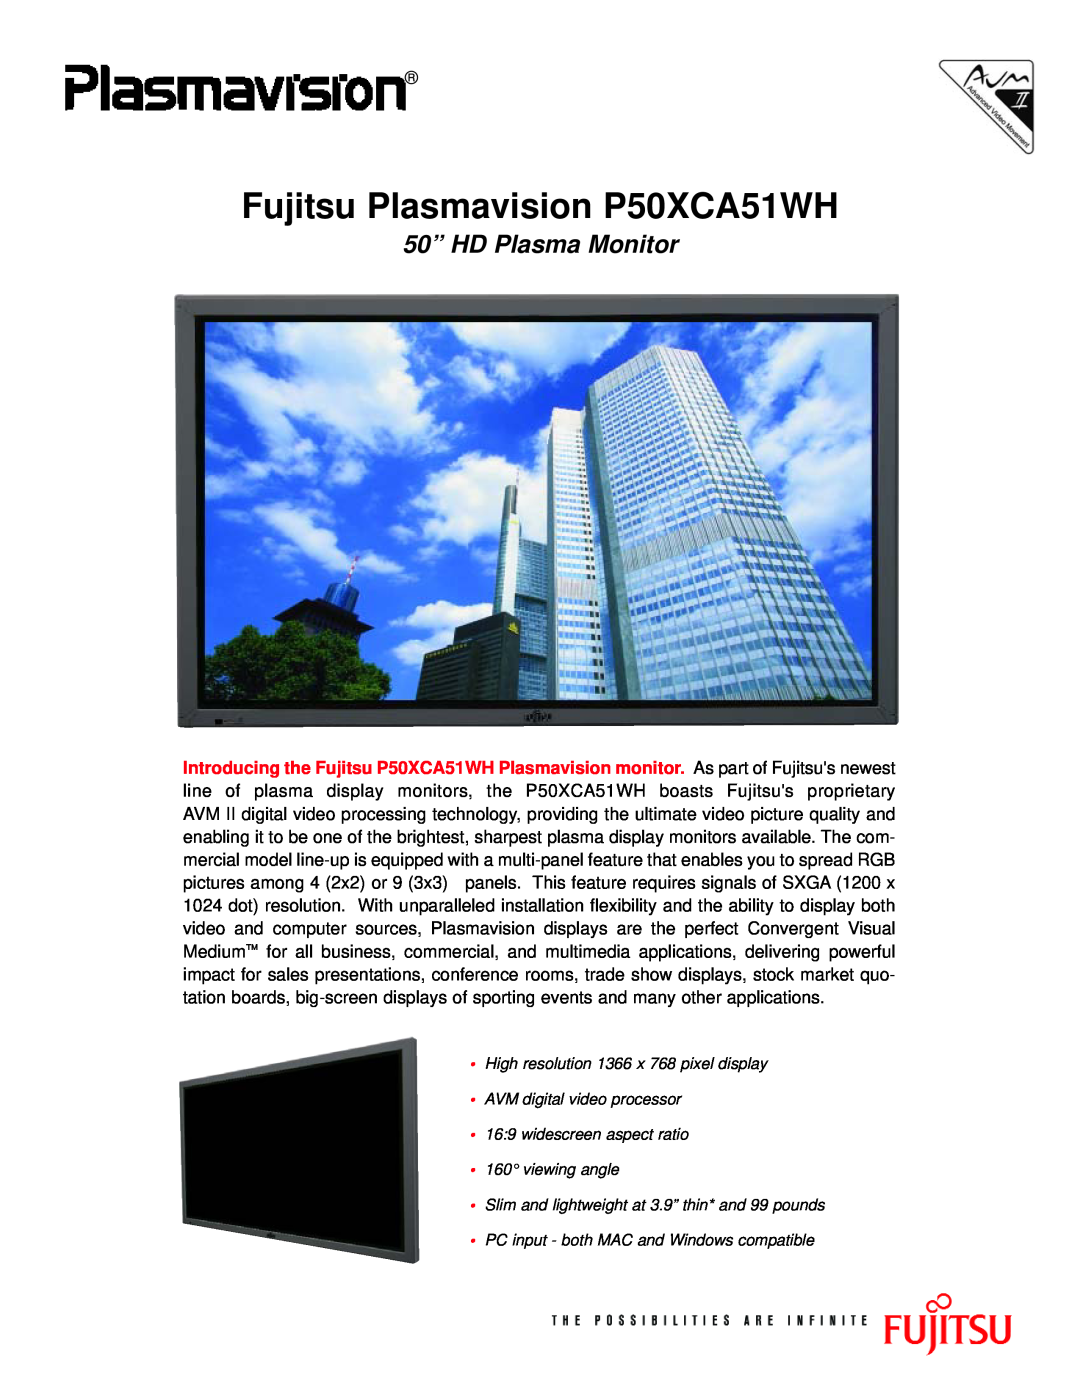 Fujitsu manual Fujitsu Plasmavision P50XCA51WH, 50” HD Plasma Monitor 